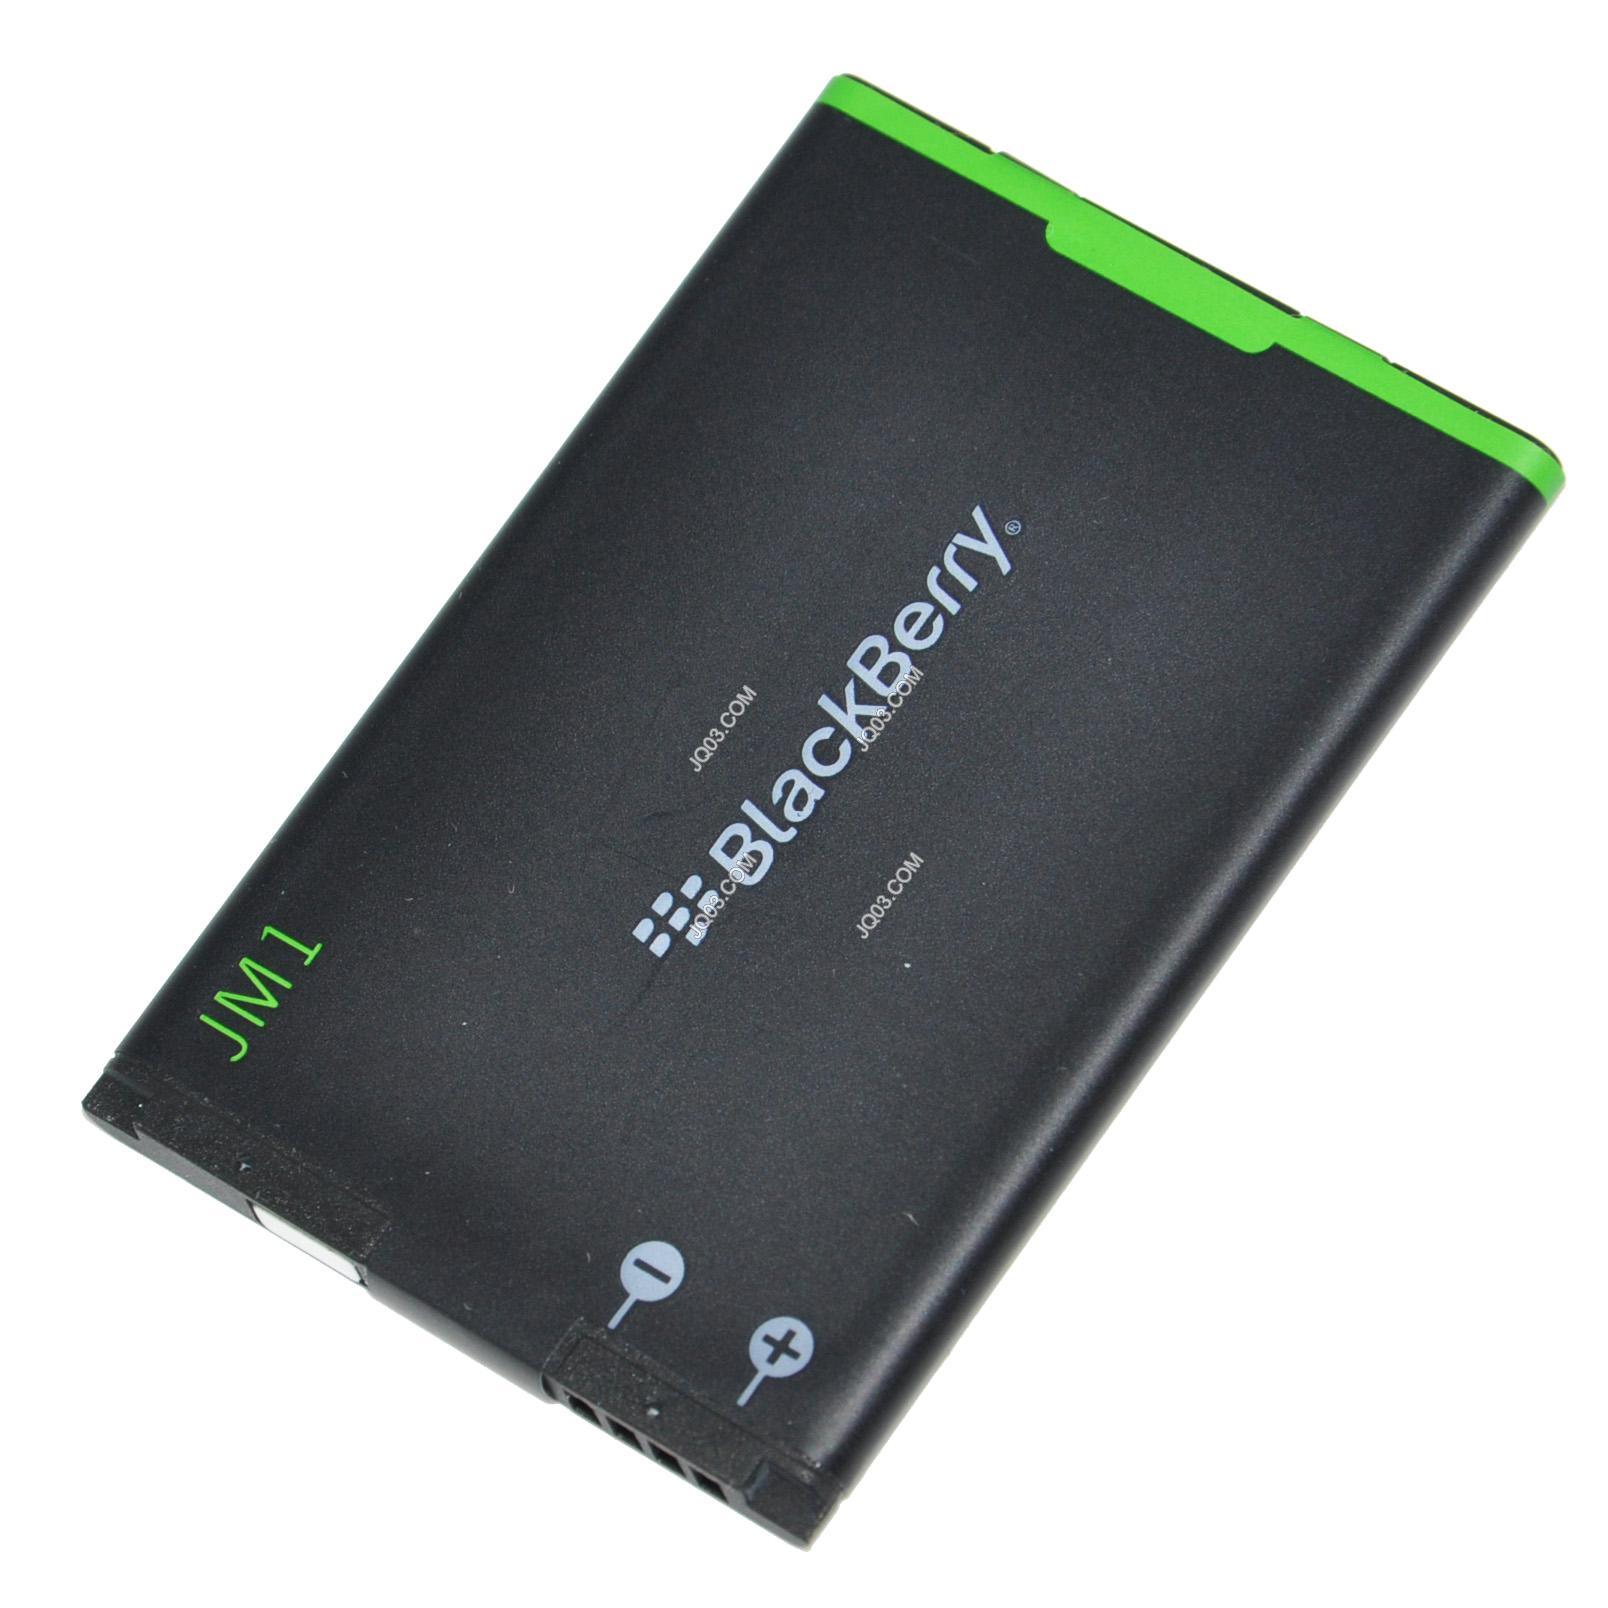 Địa ChỉPin Blackberry 9860 J-M1 Chính Hãng Original Battery, Pin Blackberry 9860 J-M1 không thể thiếu cho chiếc điện thoại của bạn được sản xuất theo chuẩn Li-ion - 3,7V dùng cho chiếc điện thoại Blackberry 9860 với thời gian sử dụng lâu hơn.